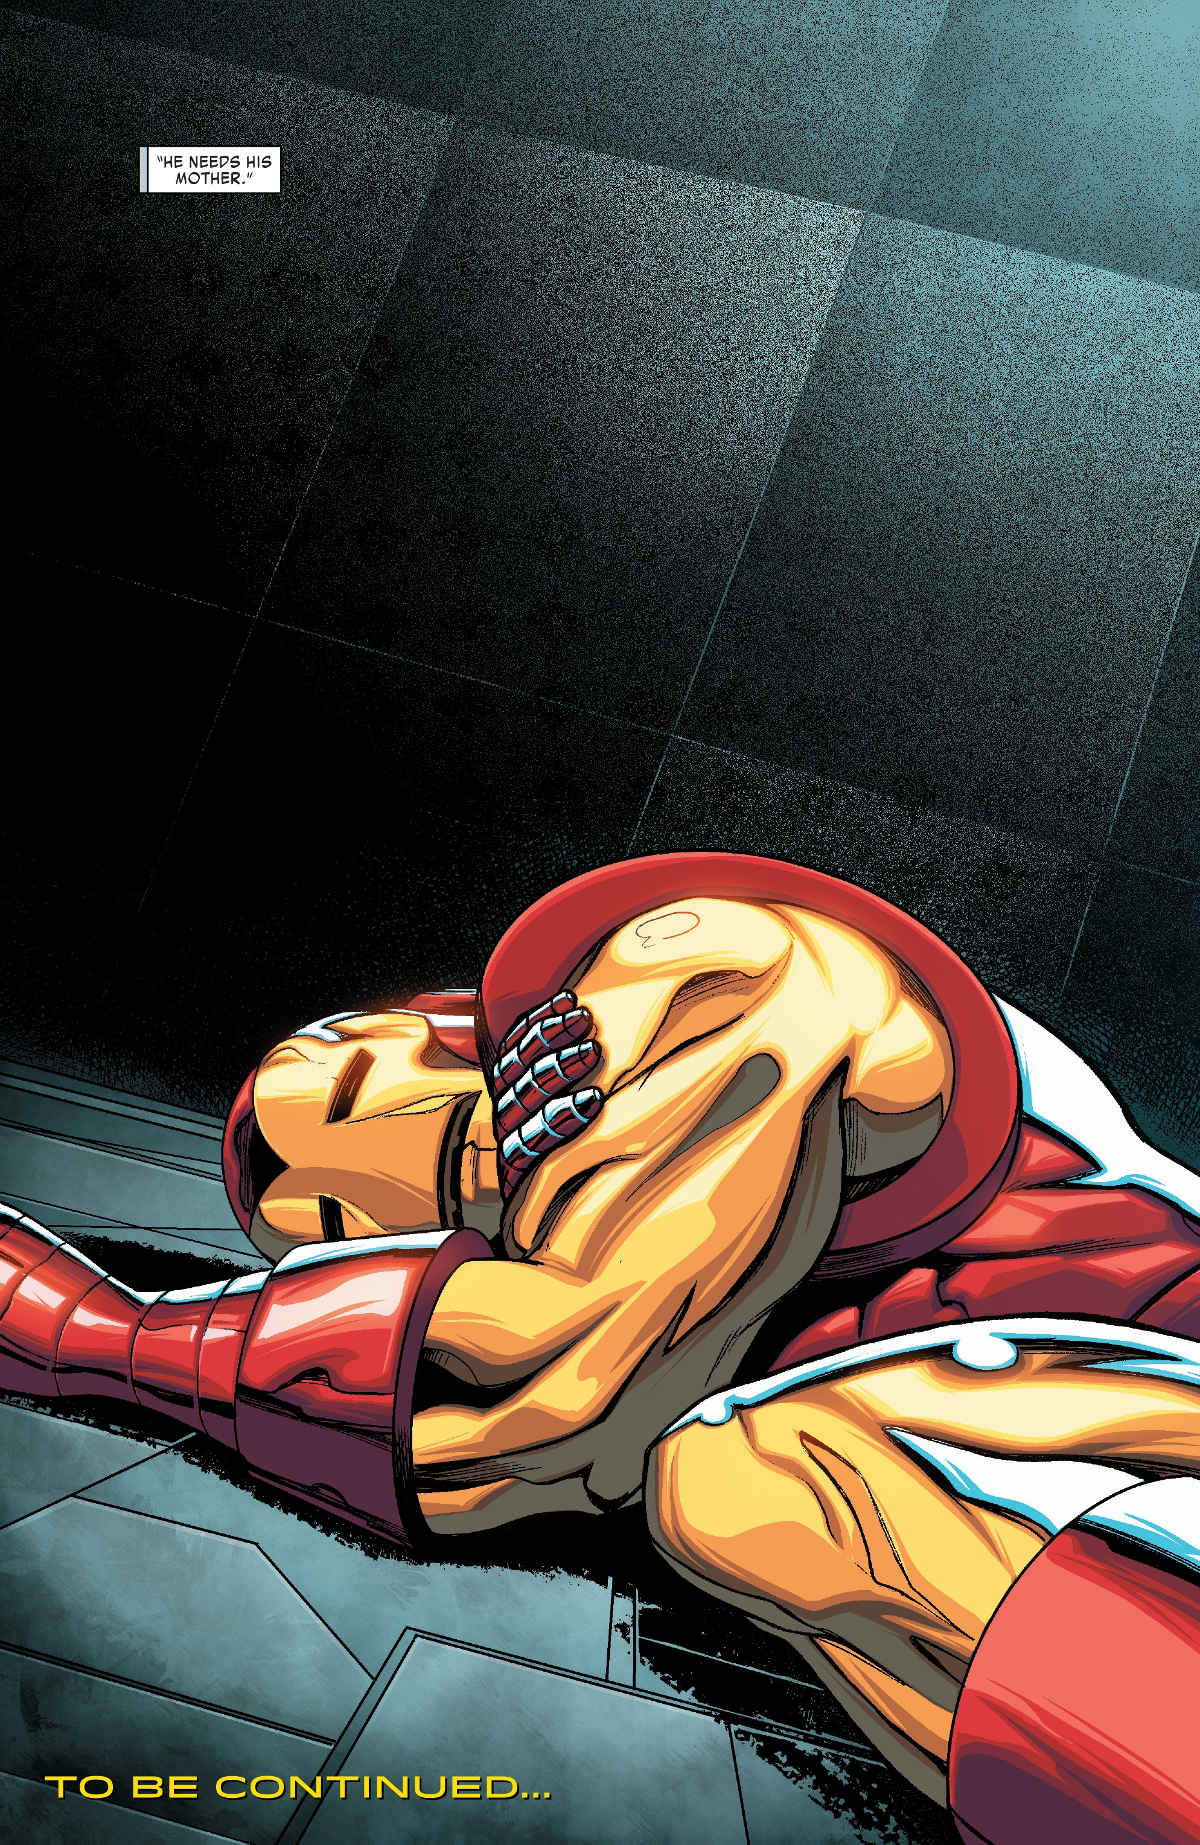 Roubaram o corpo do Tony Stark